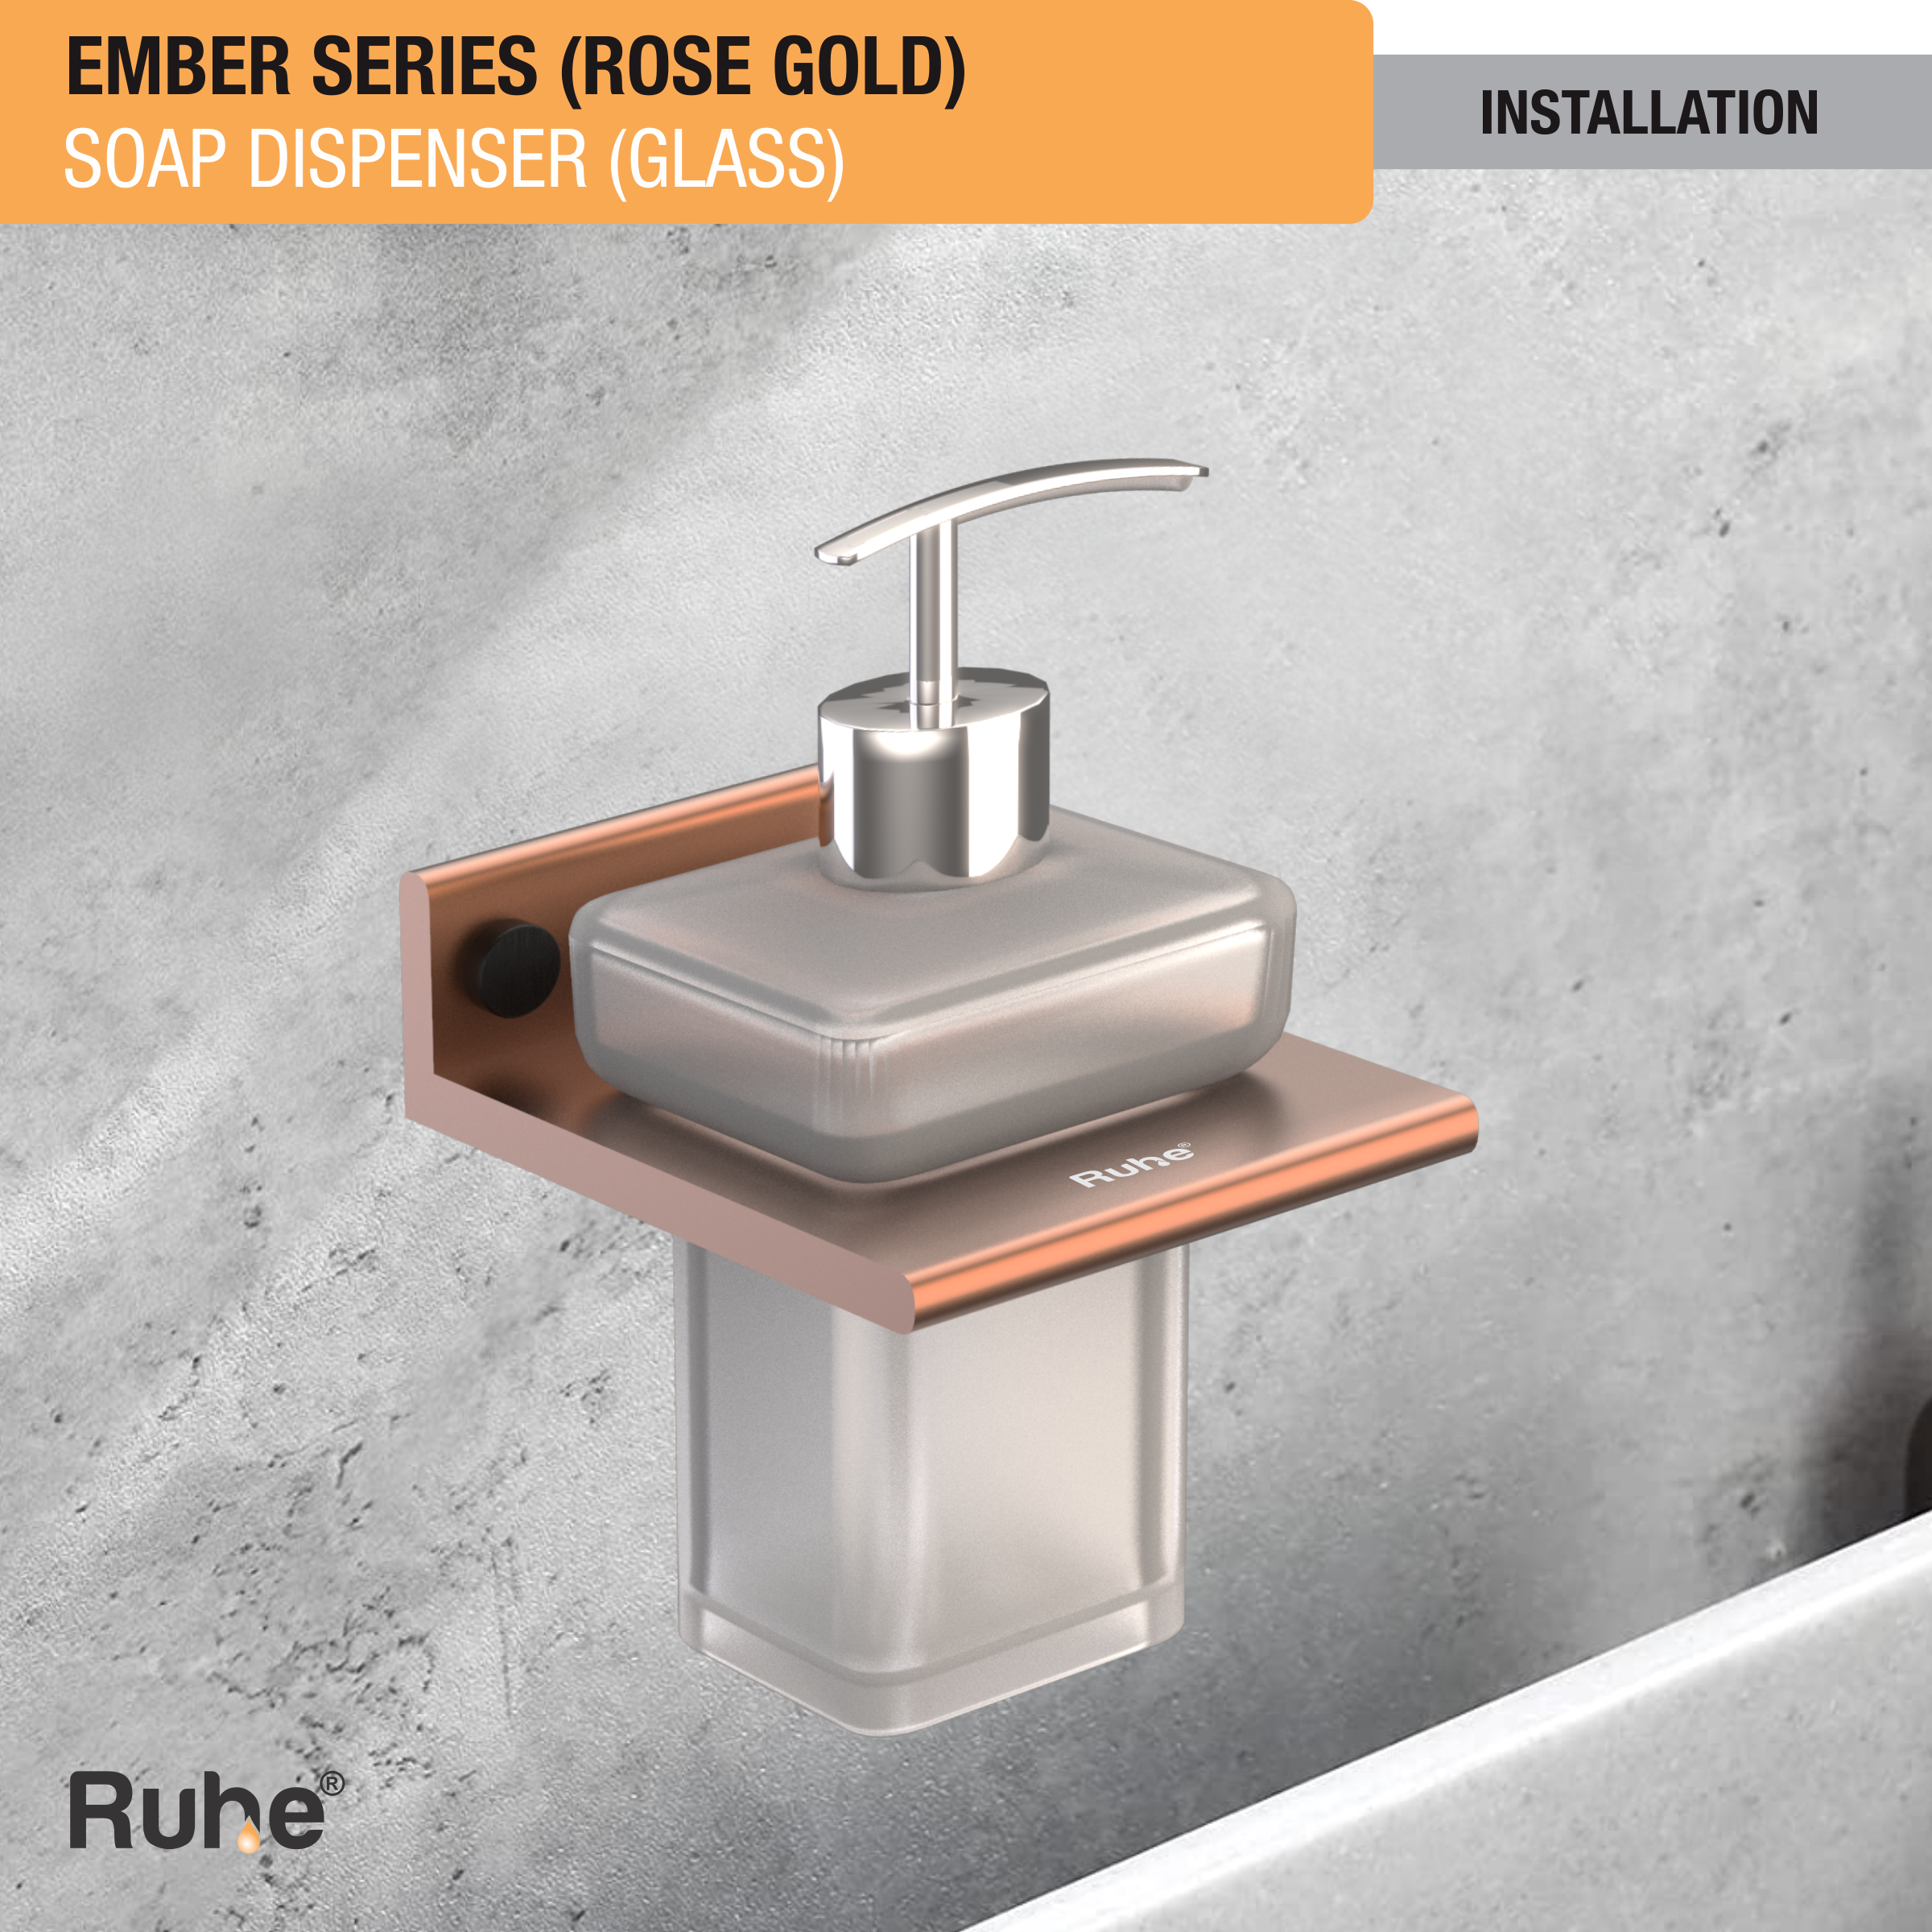 Ember Rose Gold Liquid Soap Dispenser (Space Aluminium) installation